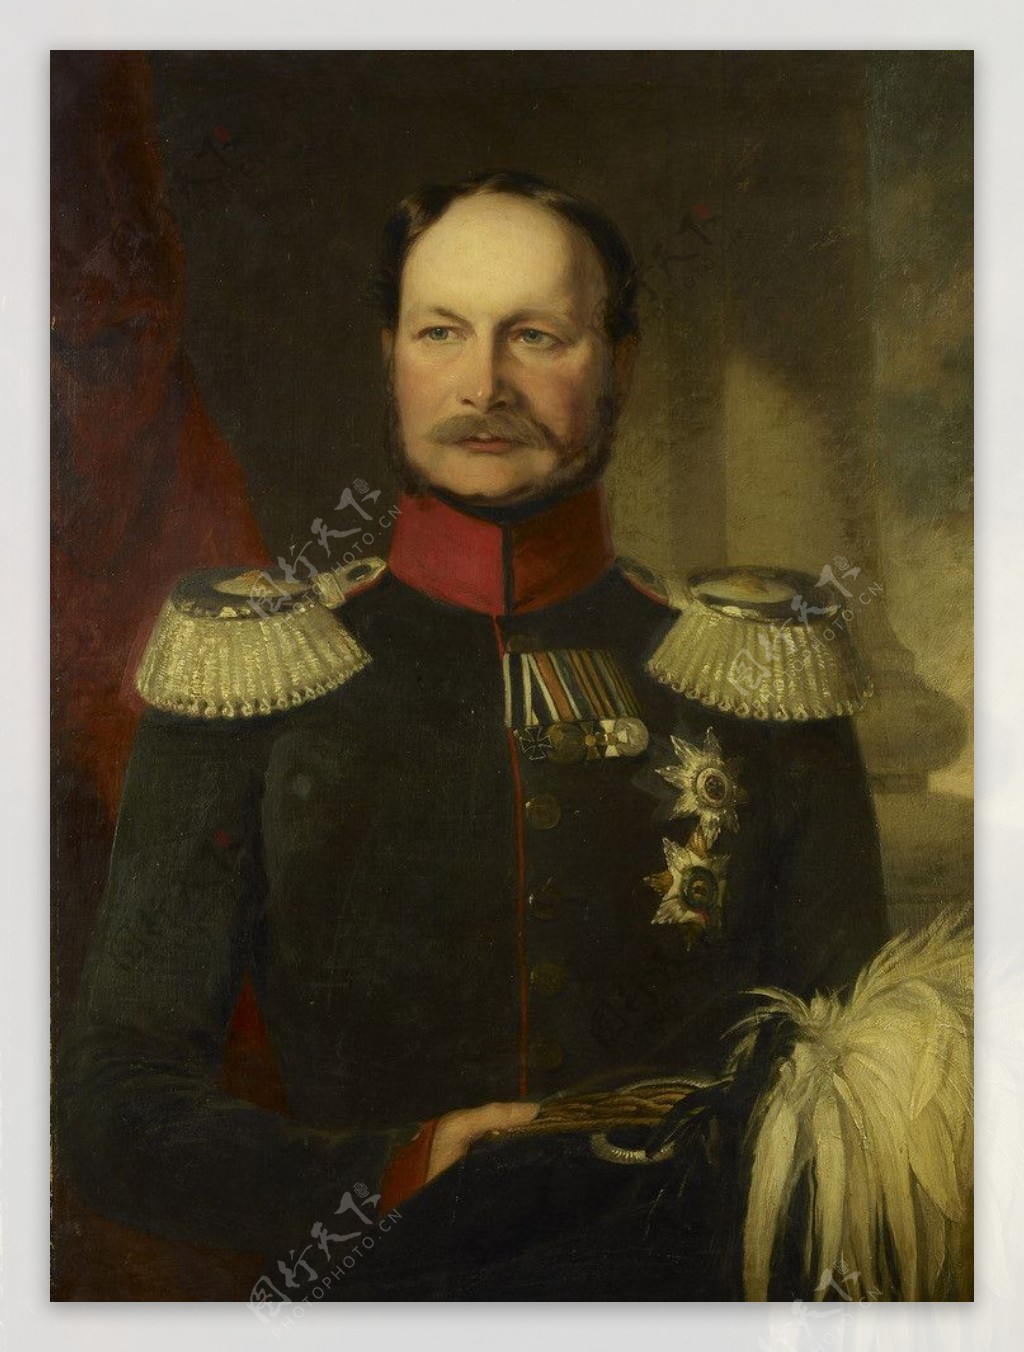 普鲁士国王兼德意士皇帝威廉一世图片